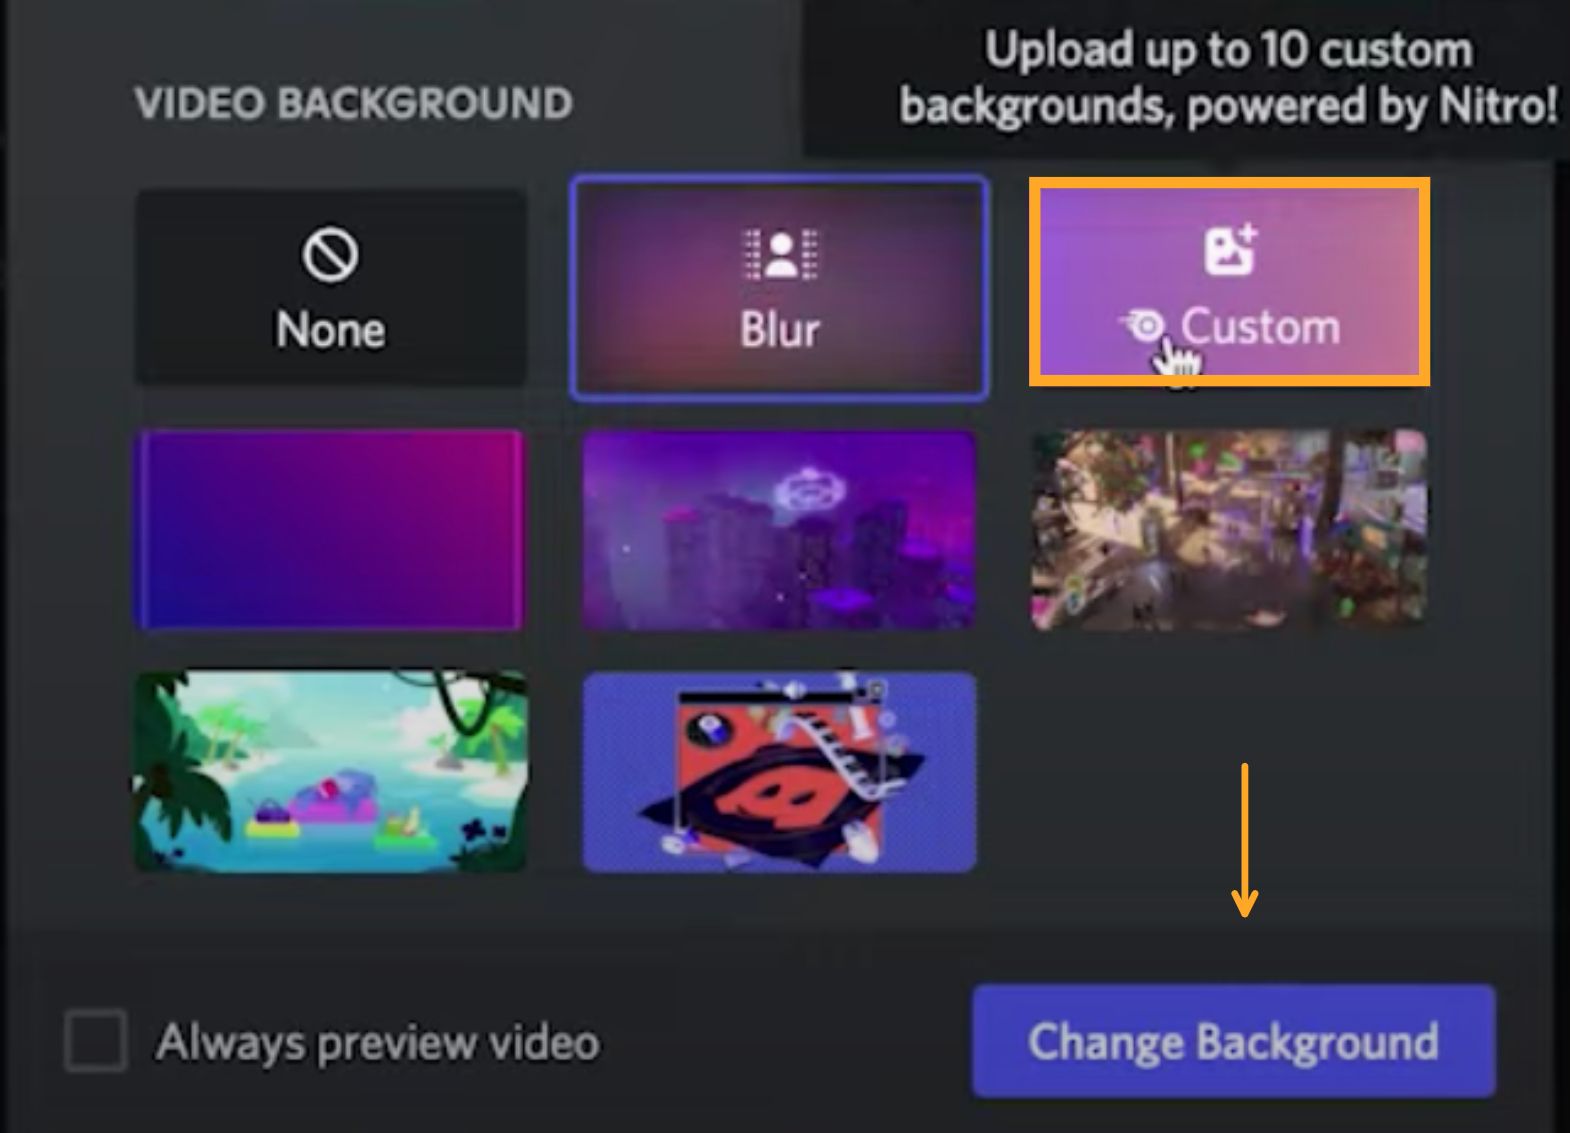 Dành thời gian để tùy chỉnh và tạo nền video Discord của riêng bạn. Với những cách tạo nền video độc đáo, bạn có thể tạo ra một nền video Discord đầy phong cách và tiện lợi. Xem hình ảnh để biết cách tạo nền video Discord tùy chỉnh nào.